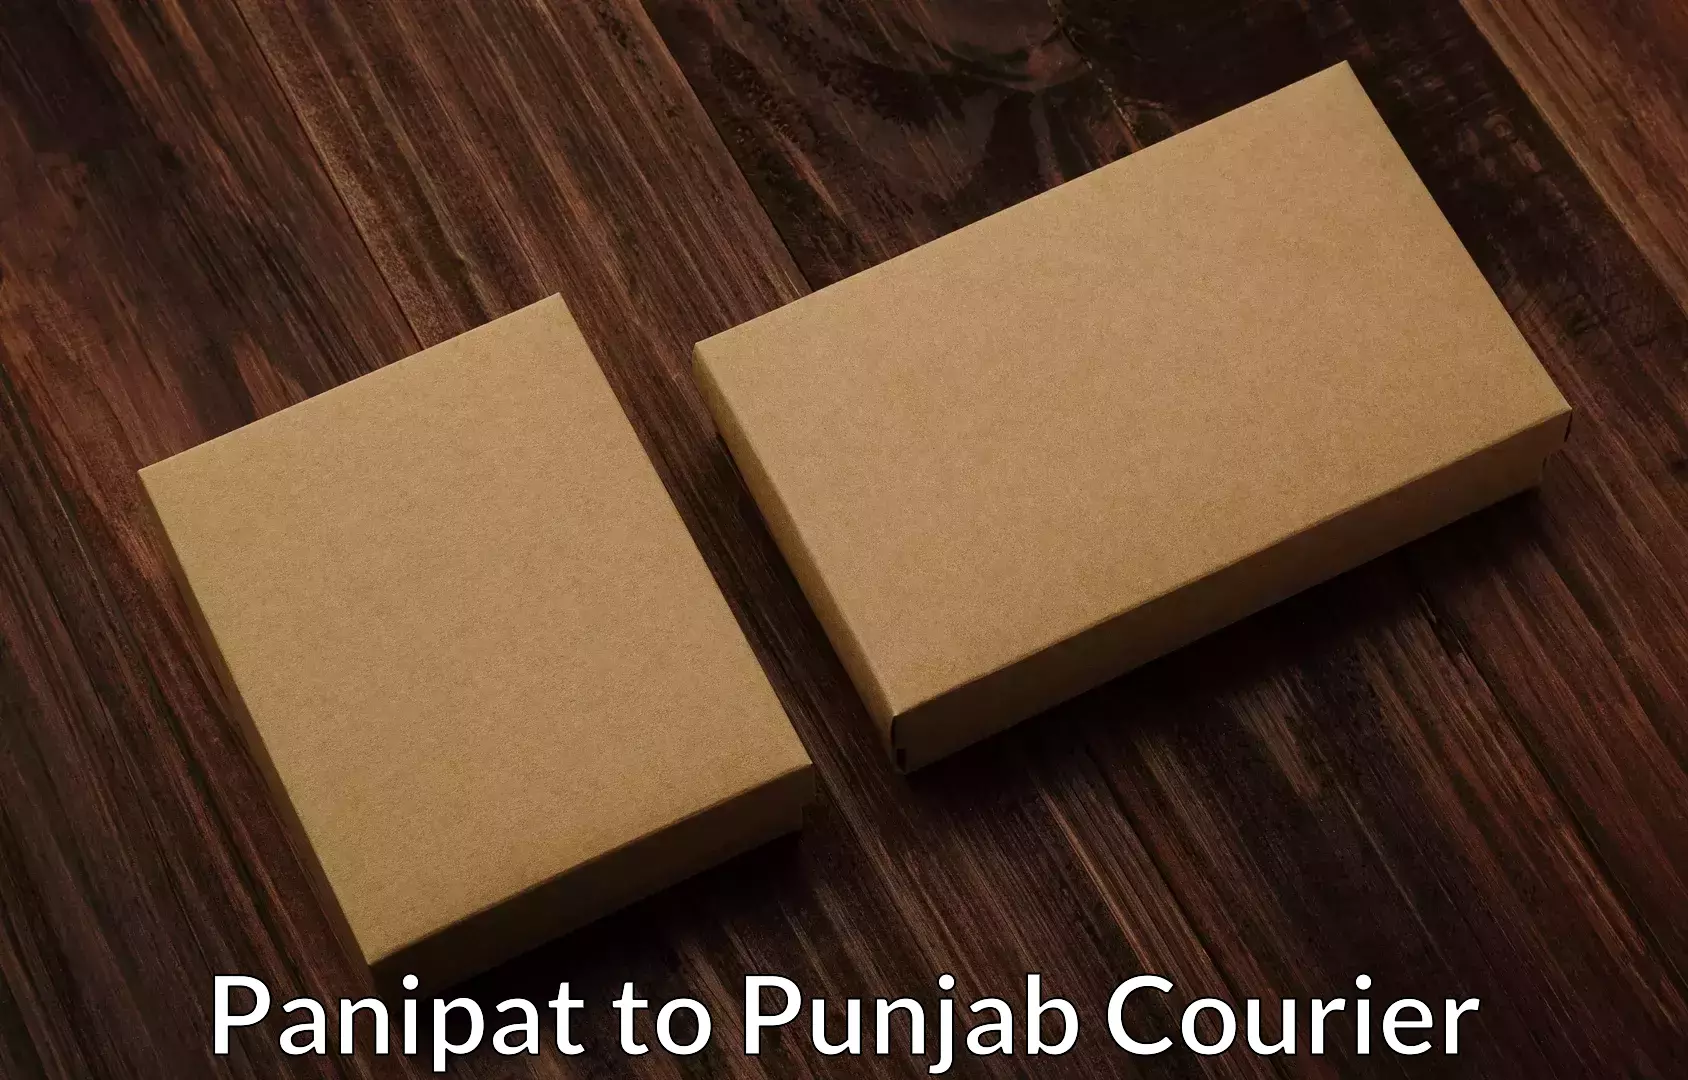 Furniture moving service Panipat to Punjab